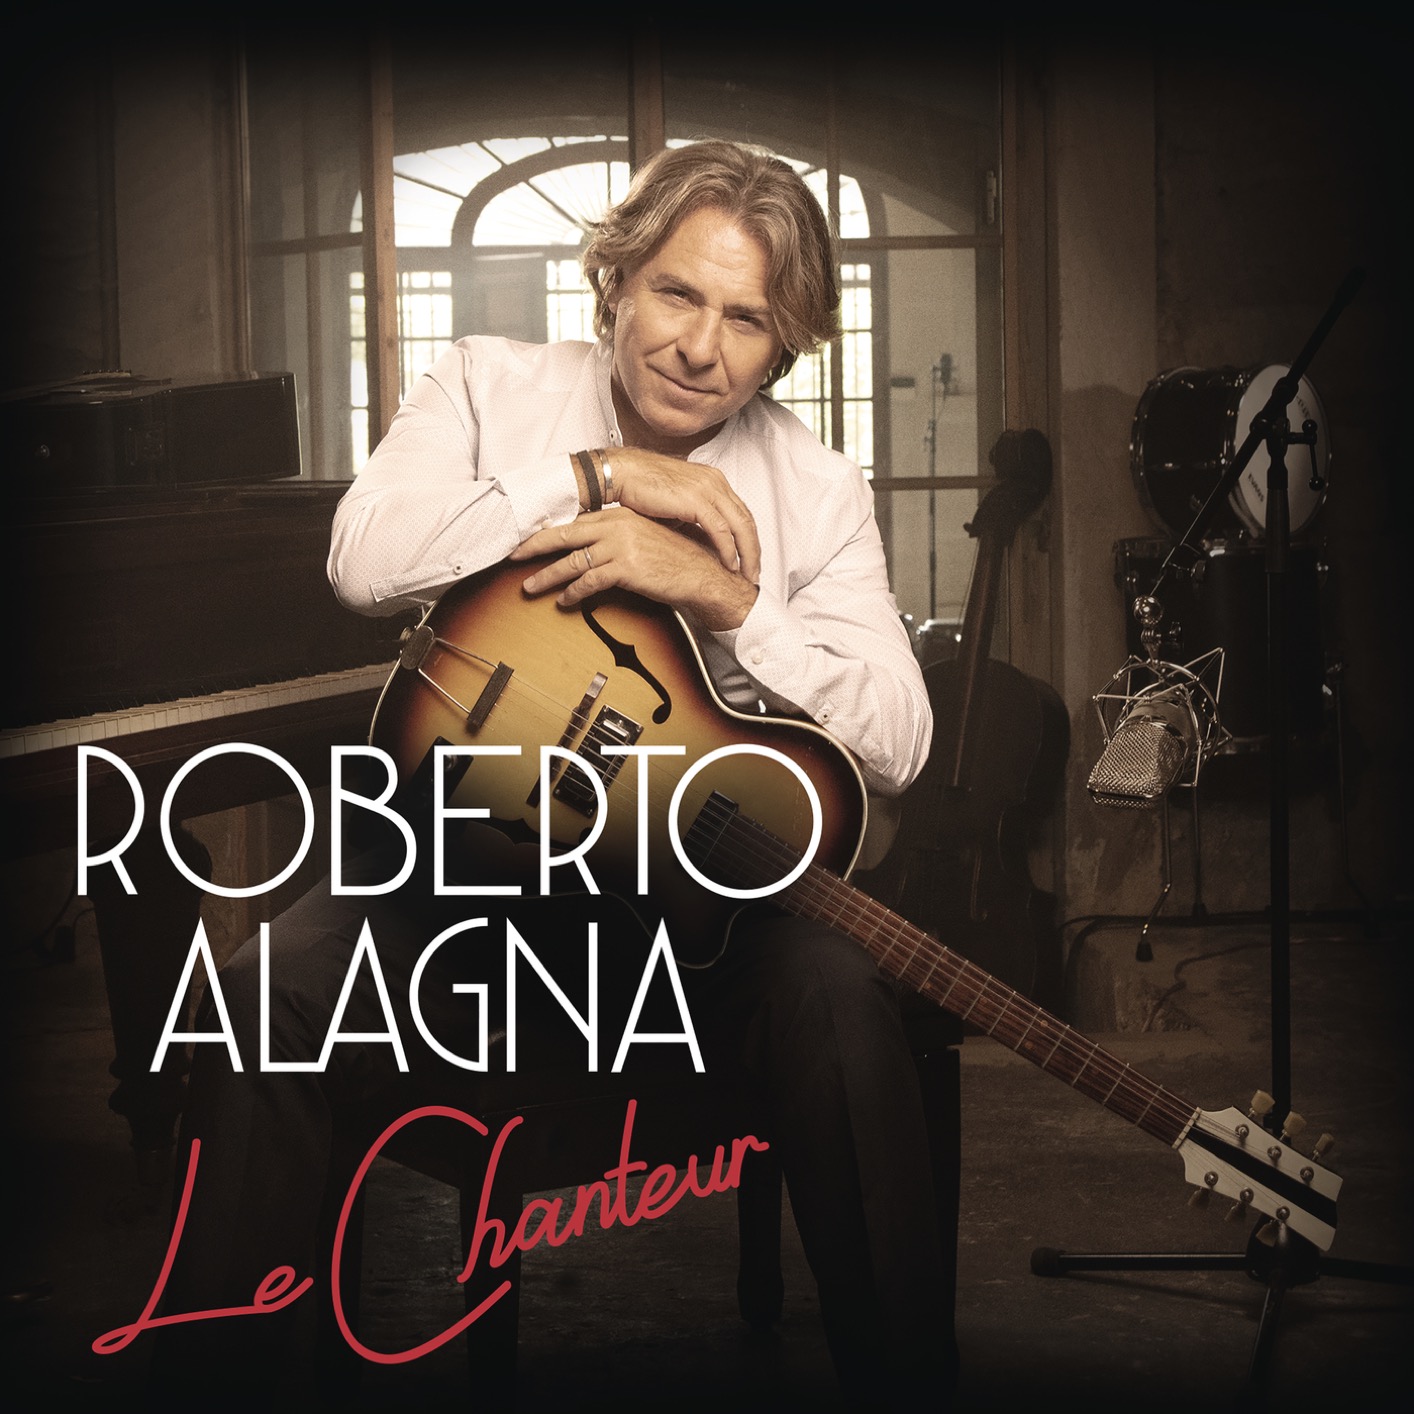 Roberto Alagna - Le Chanteur (2020) [FLAC 24bit/96kHz]